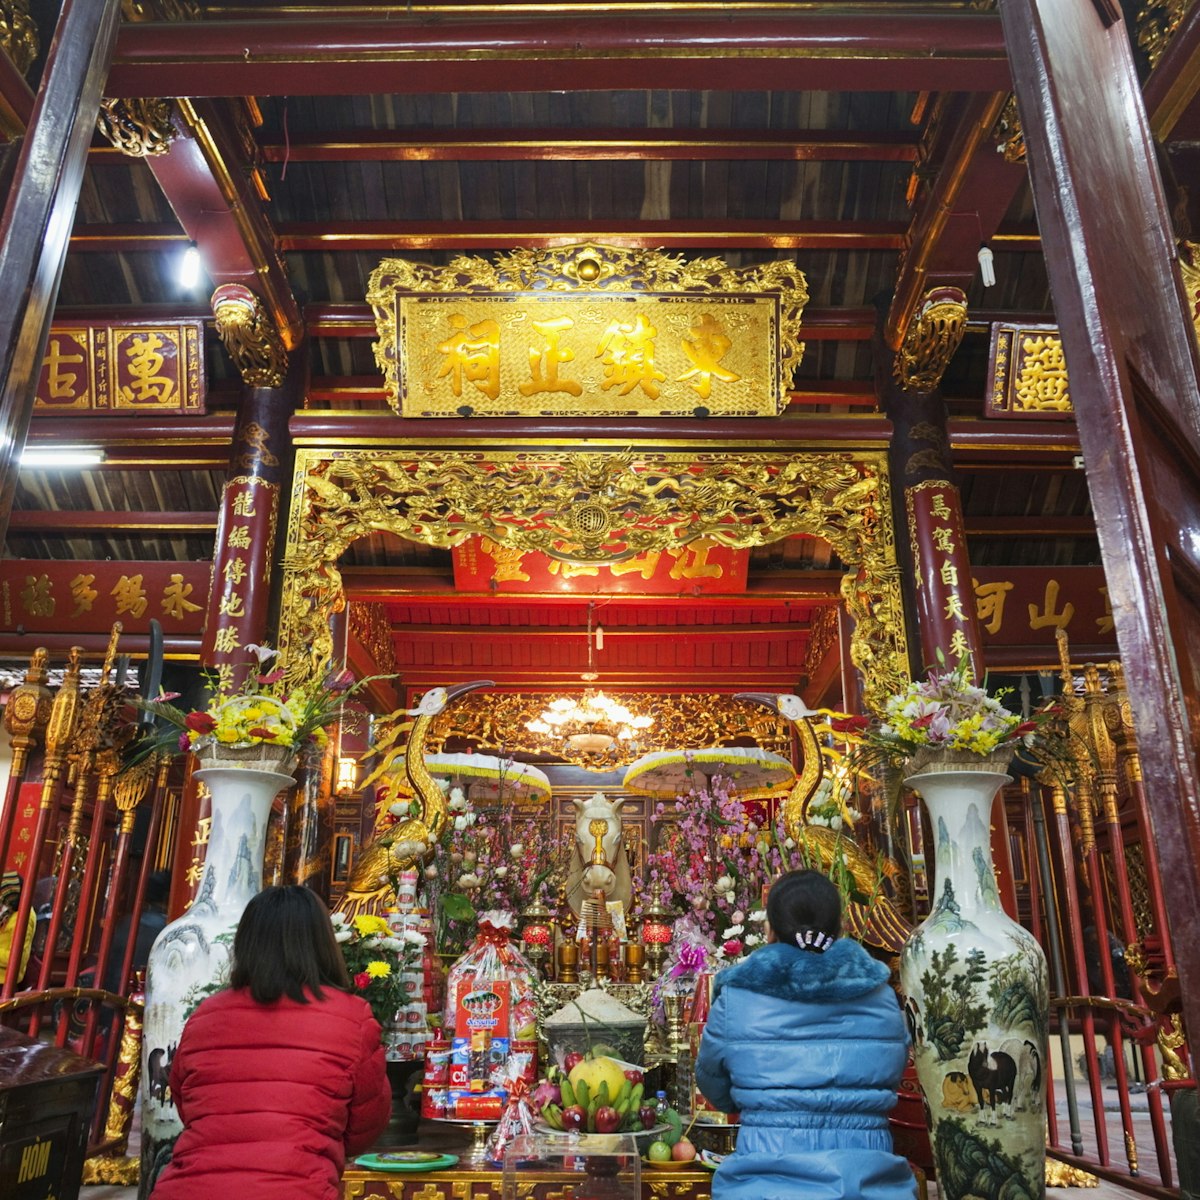 Bach Ma Temple, Hanoi, Vietnam, Indochina, Southeast Asia, Asia